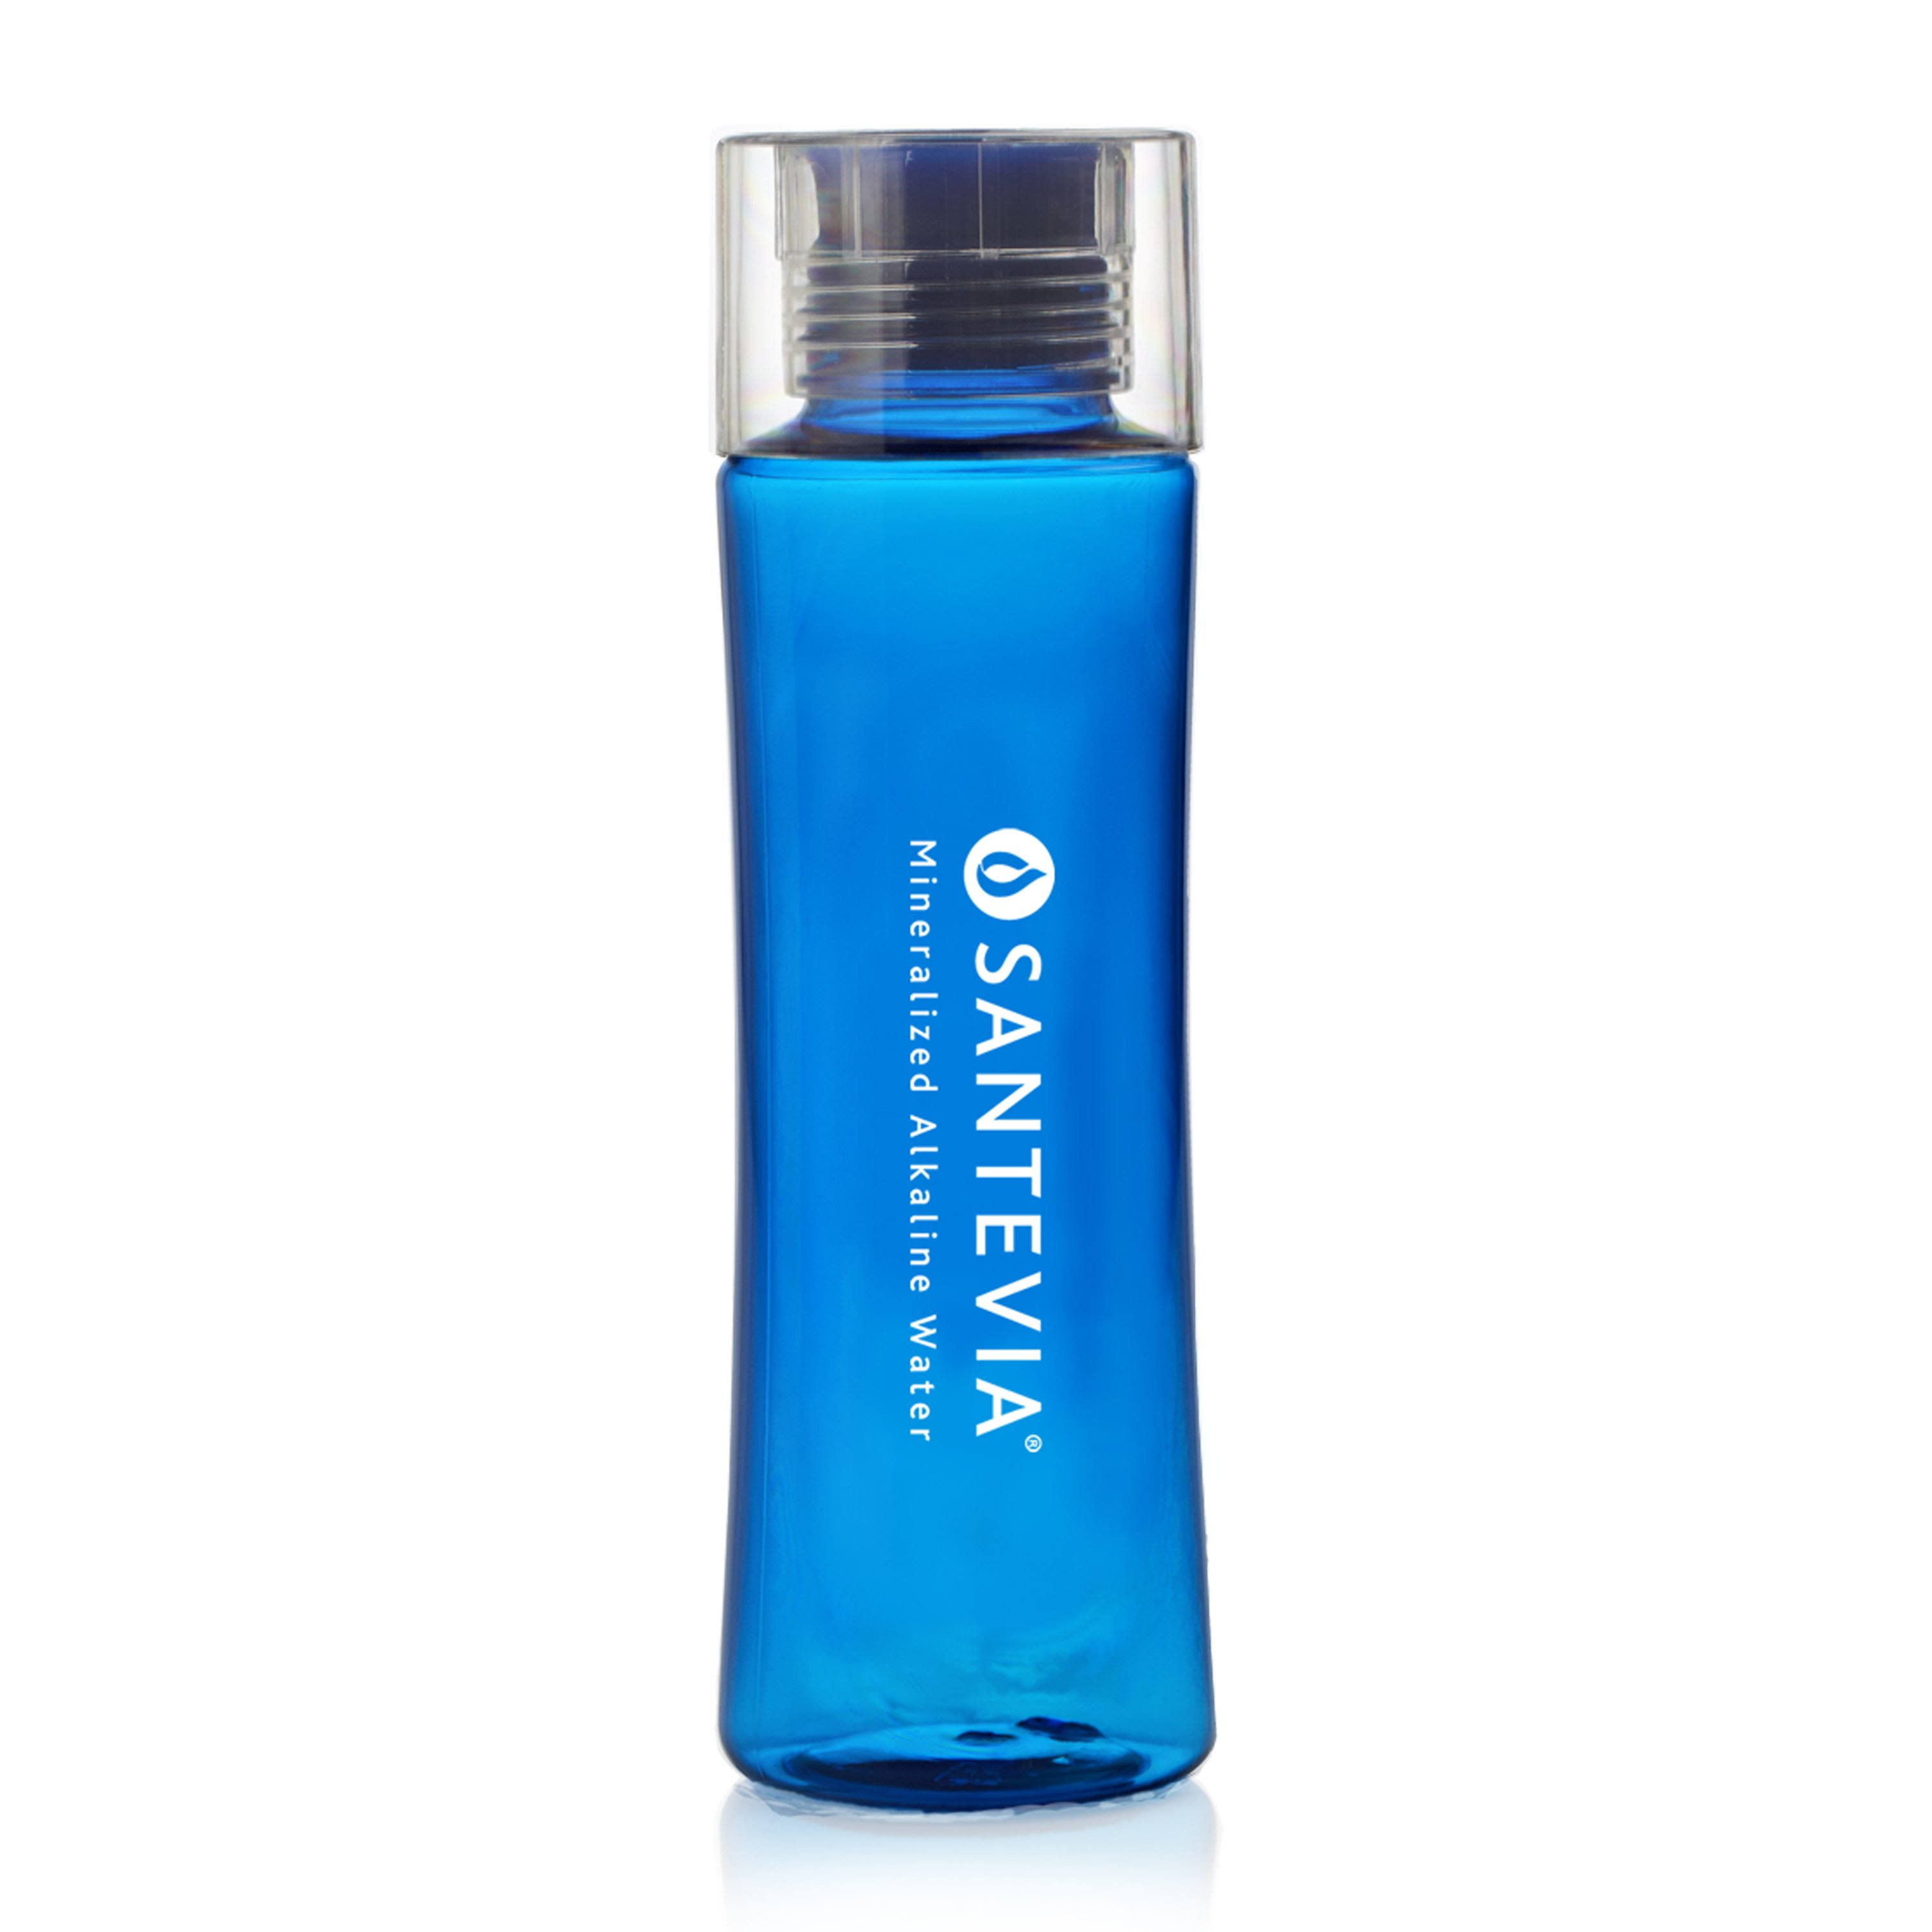 Santevia Tritan Water Bottle - Blue, 20oz